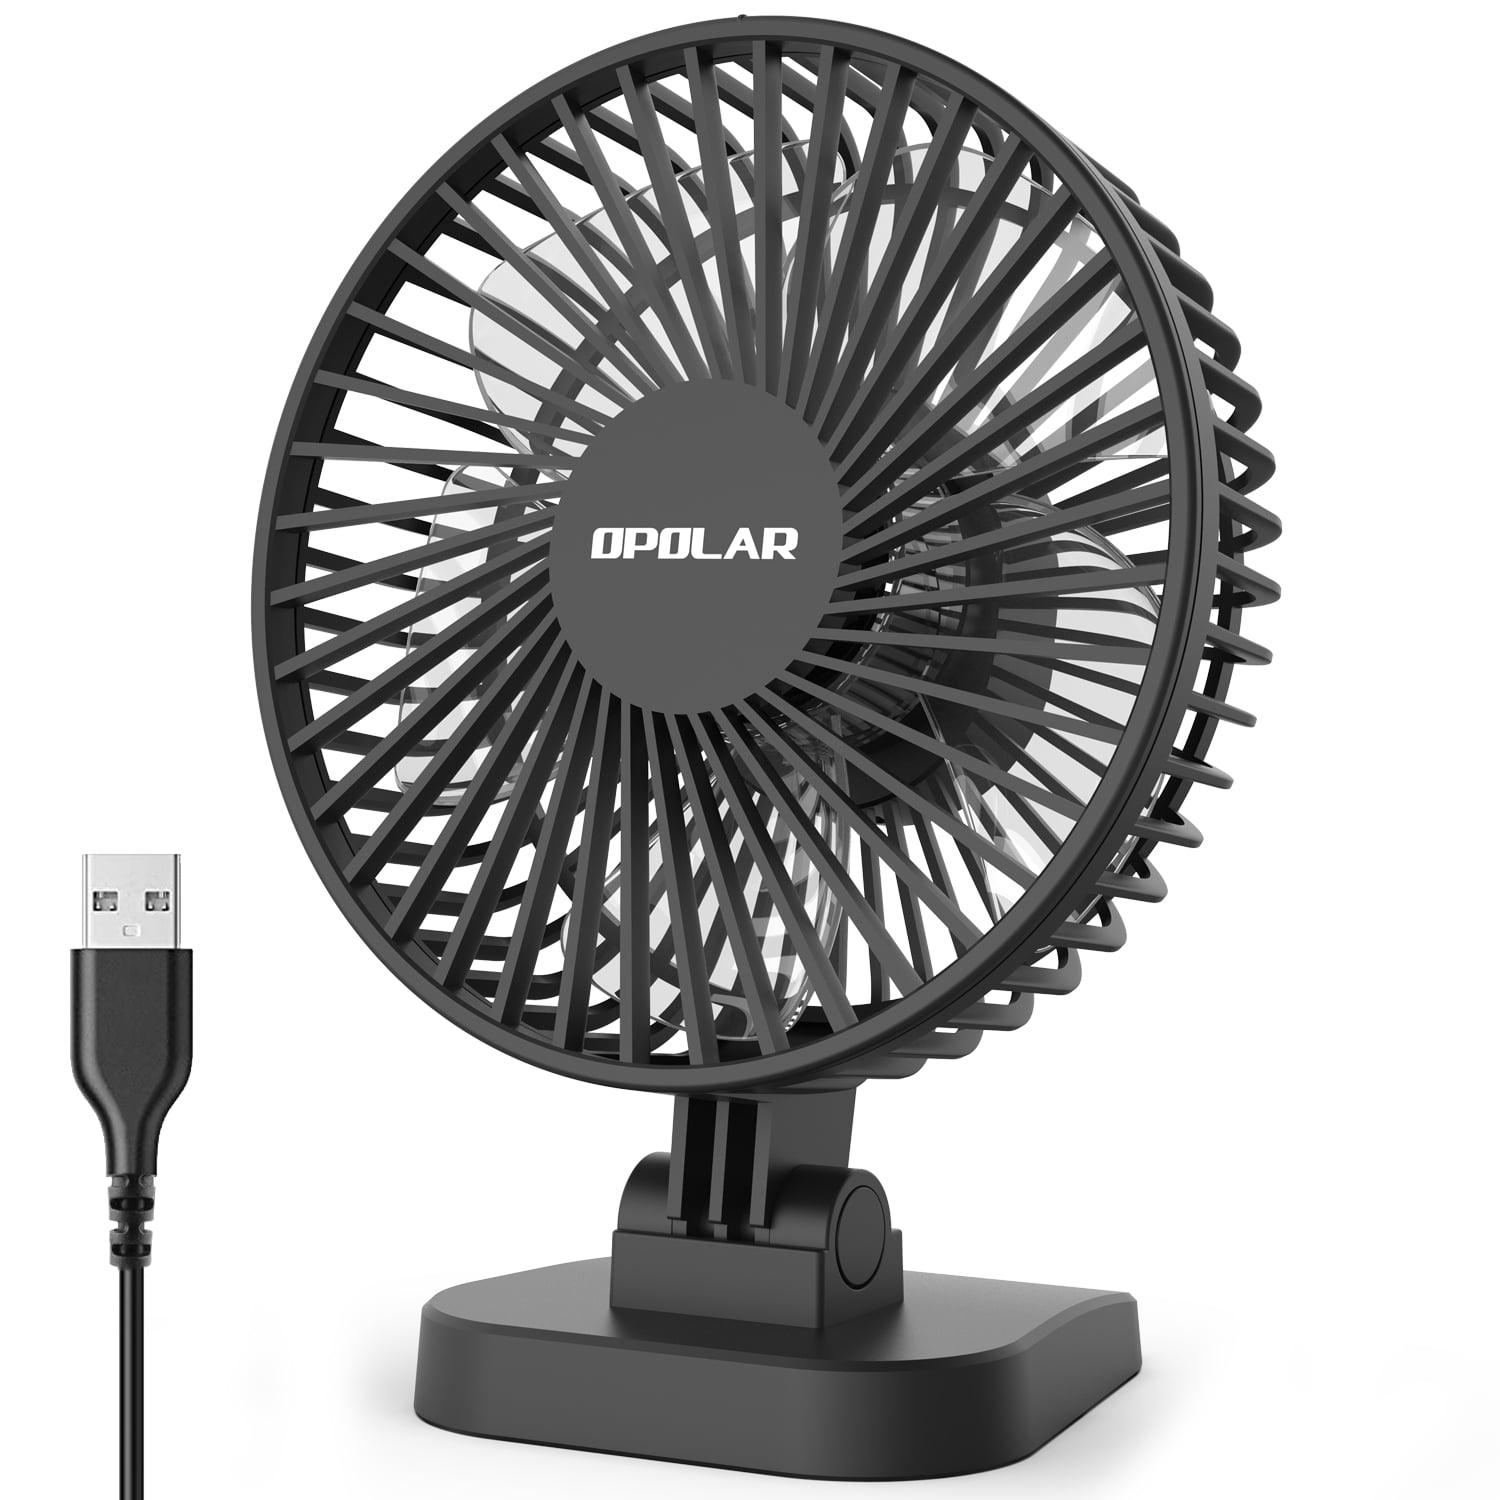 Strong Wind Portable Fan Sturdy 3 Blades Black Mini USB Desk Fan Durable Quiet Fan for Home/Office/Travel Small Metal Design USB Powered Fan